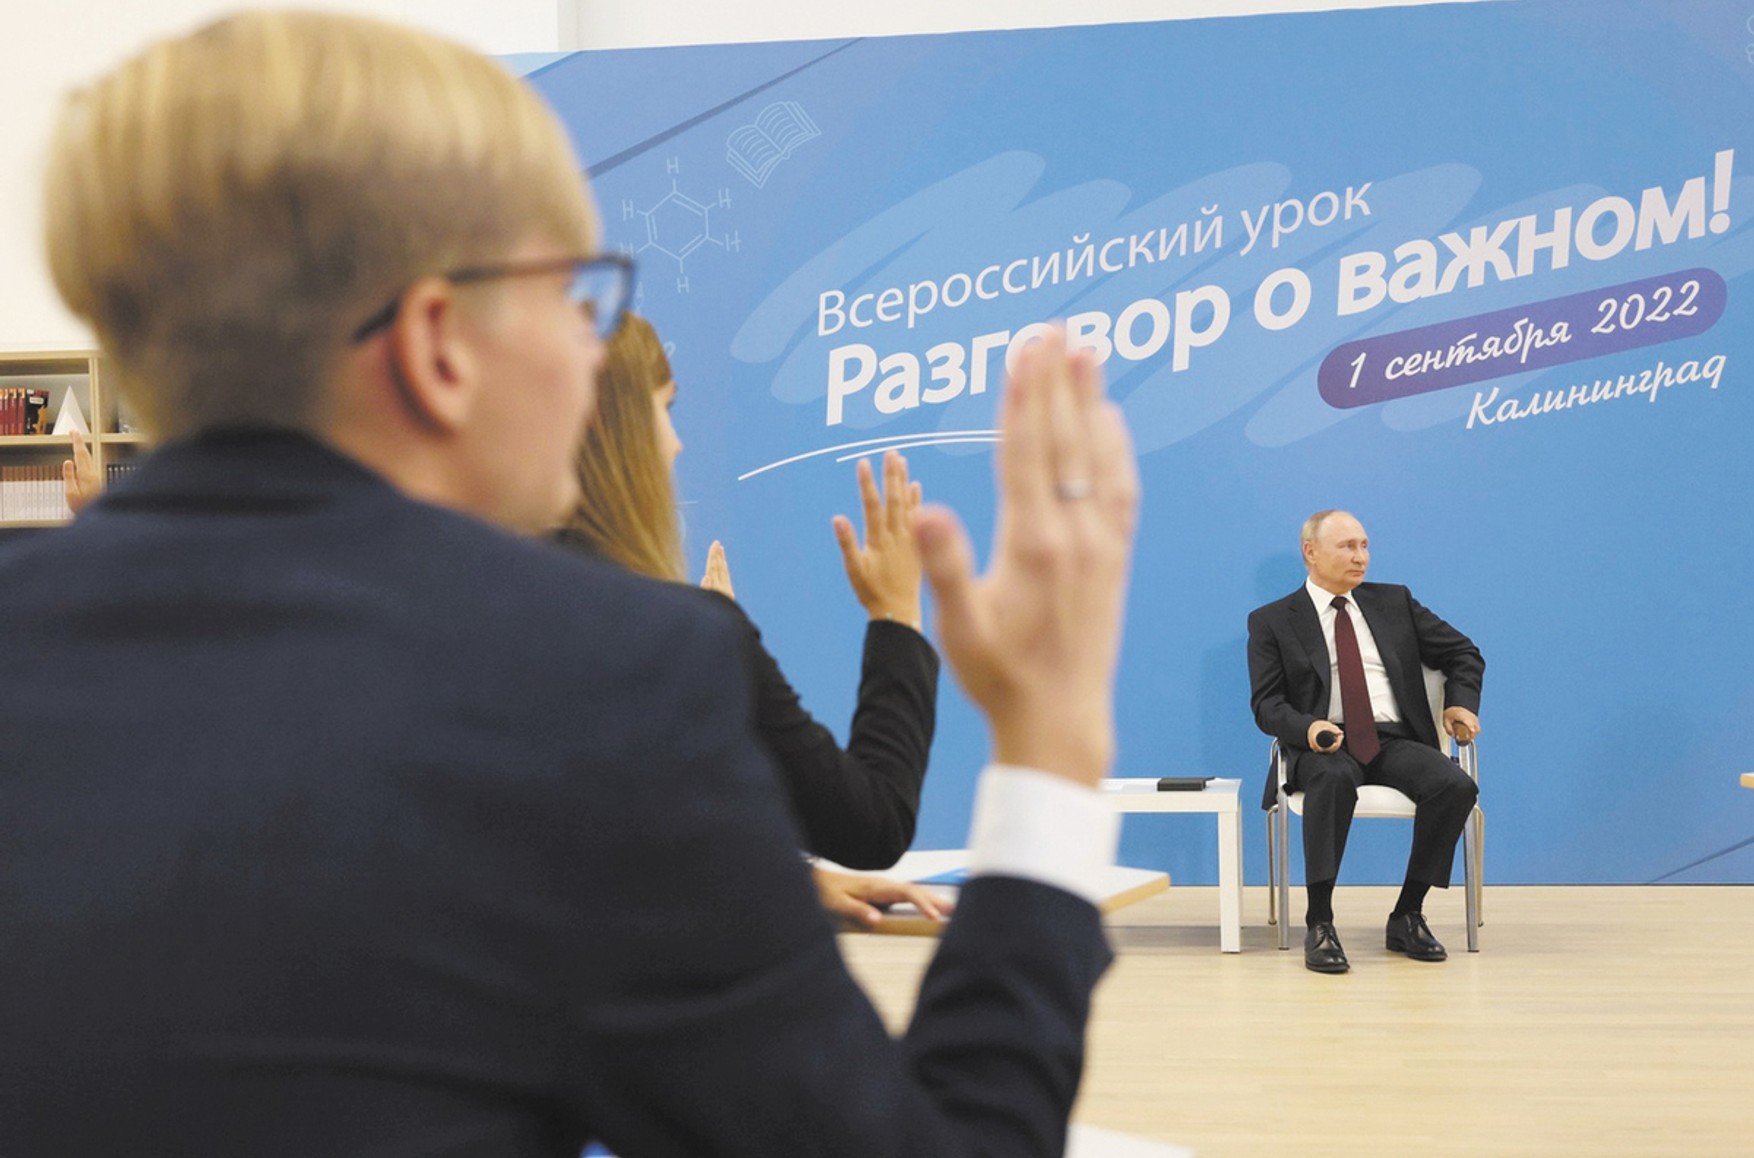 Путин отменил все встречи, где могли спросить про войну. Вместо этого он рассказывал свою версию событий детям, матерям и стюардессам